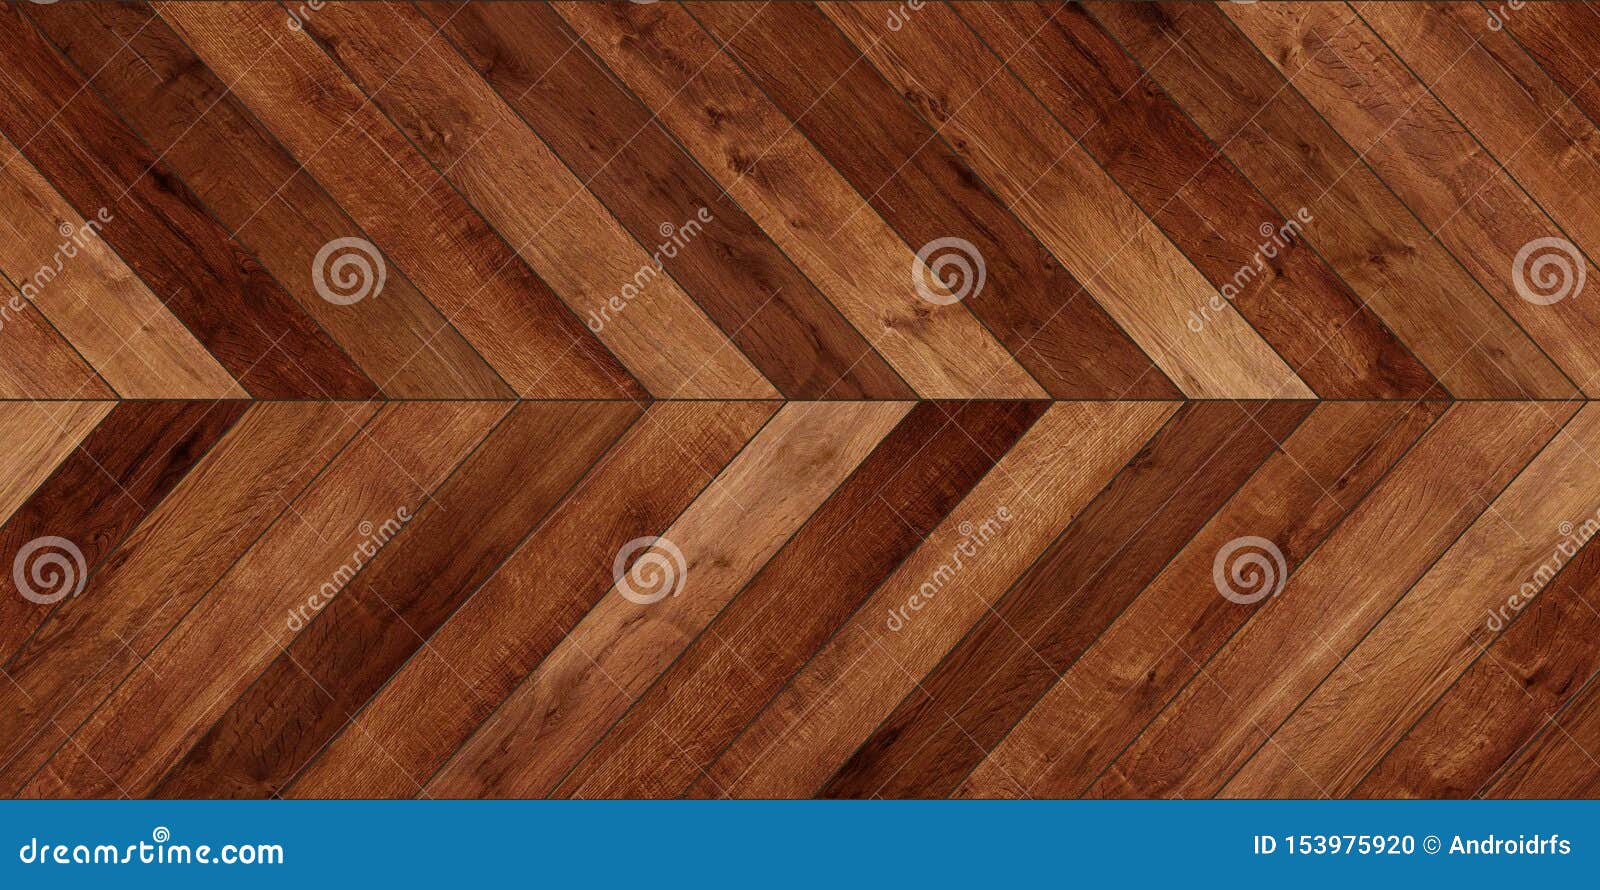 seamless wood parquet texture horizontal chevron various brown